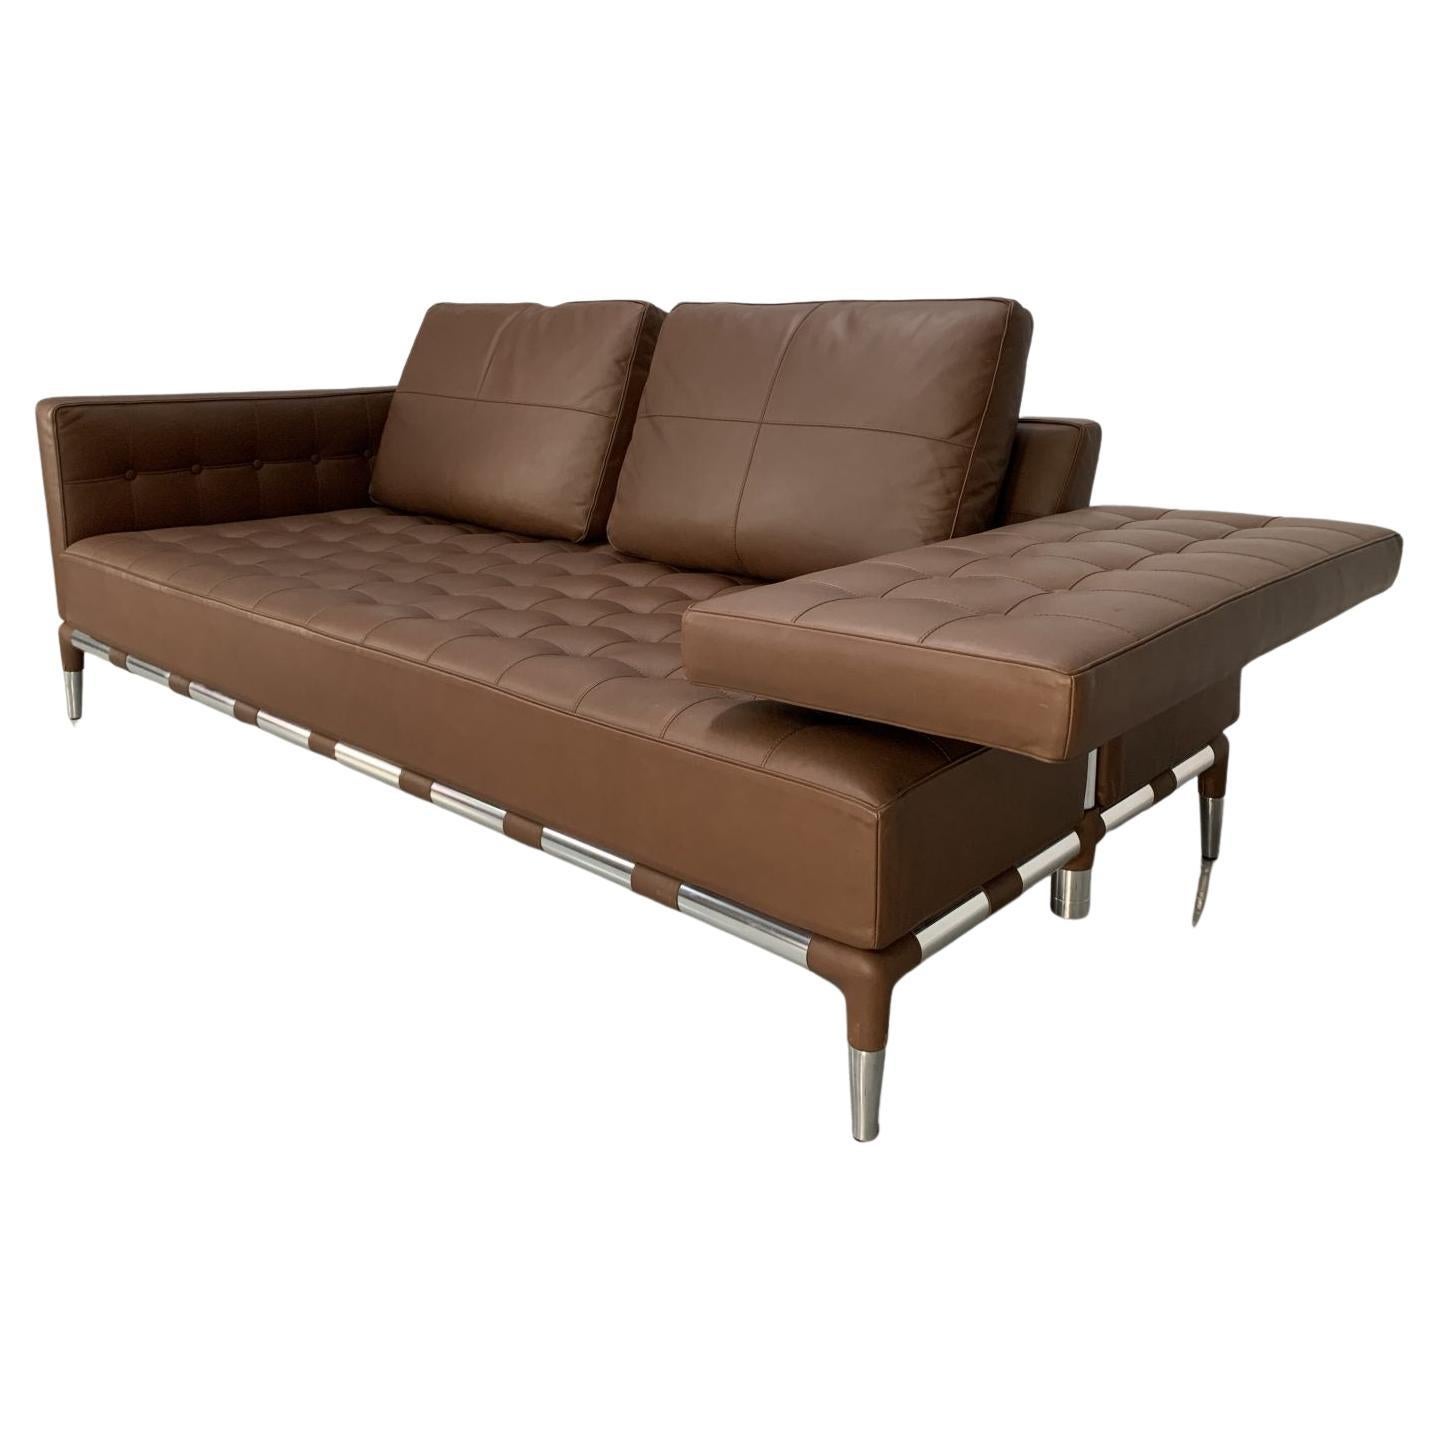 Cassina “241 Prive Divano” Sofa – in Mid-Brown “Pelle” Leather